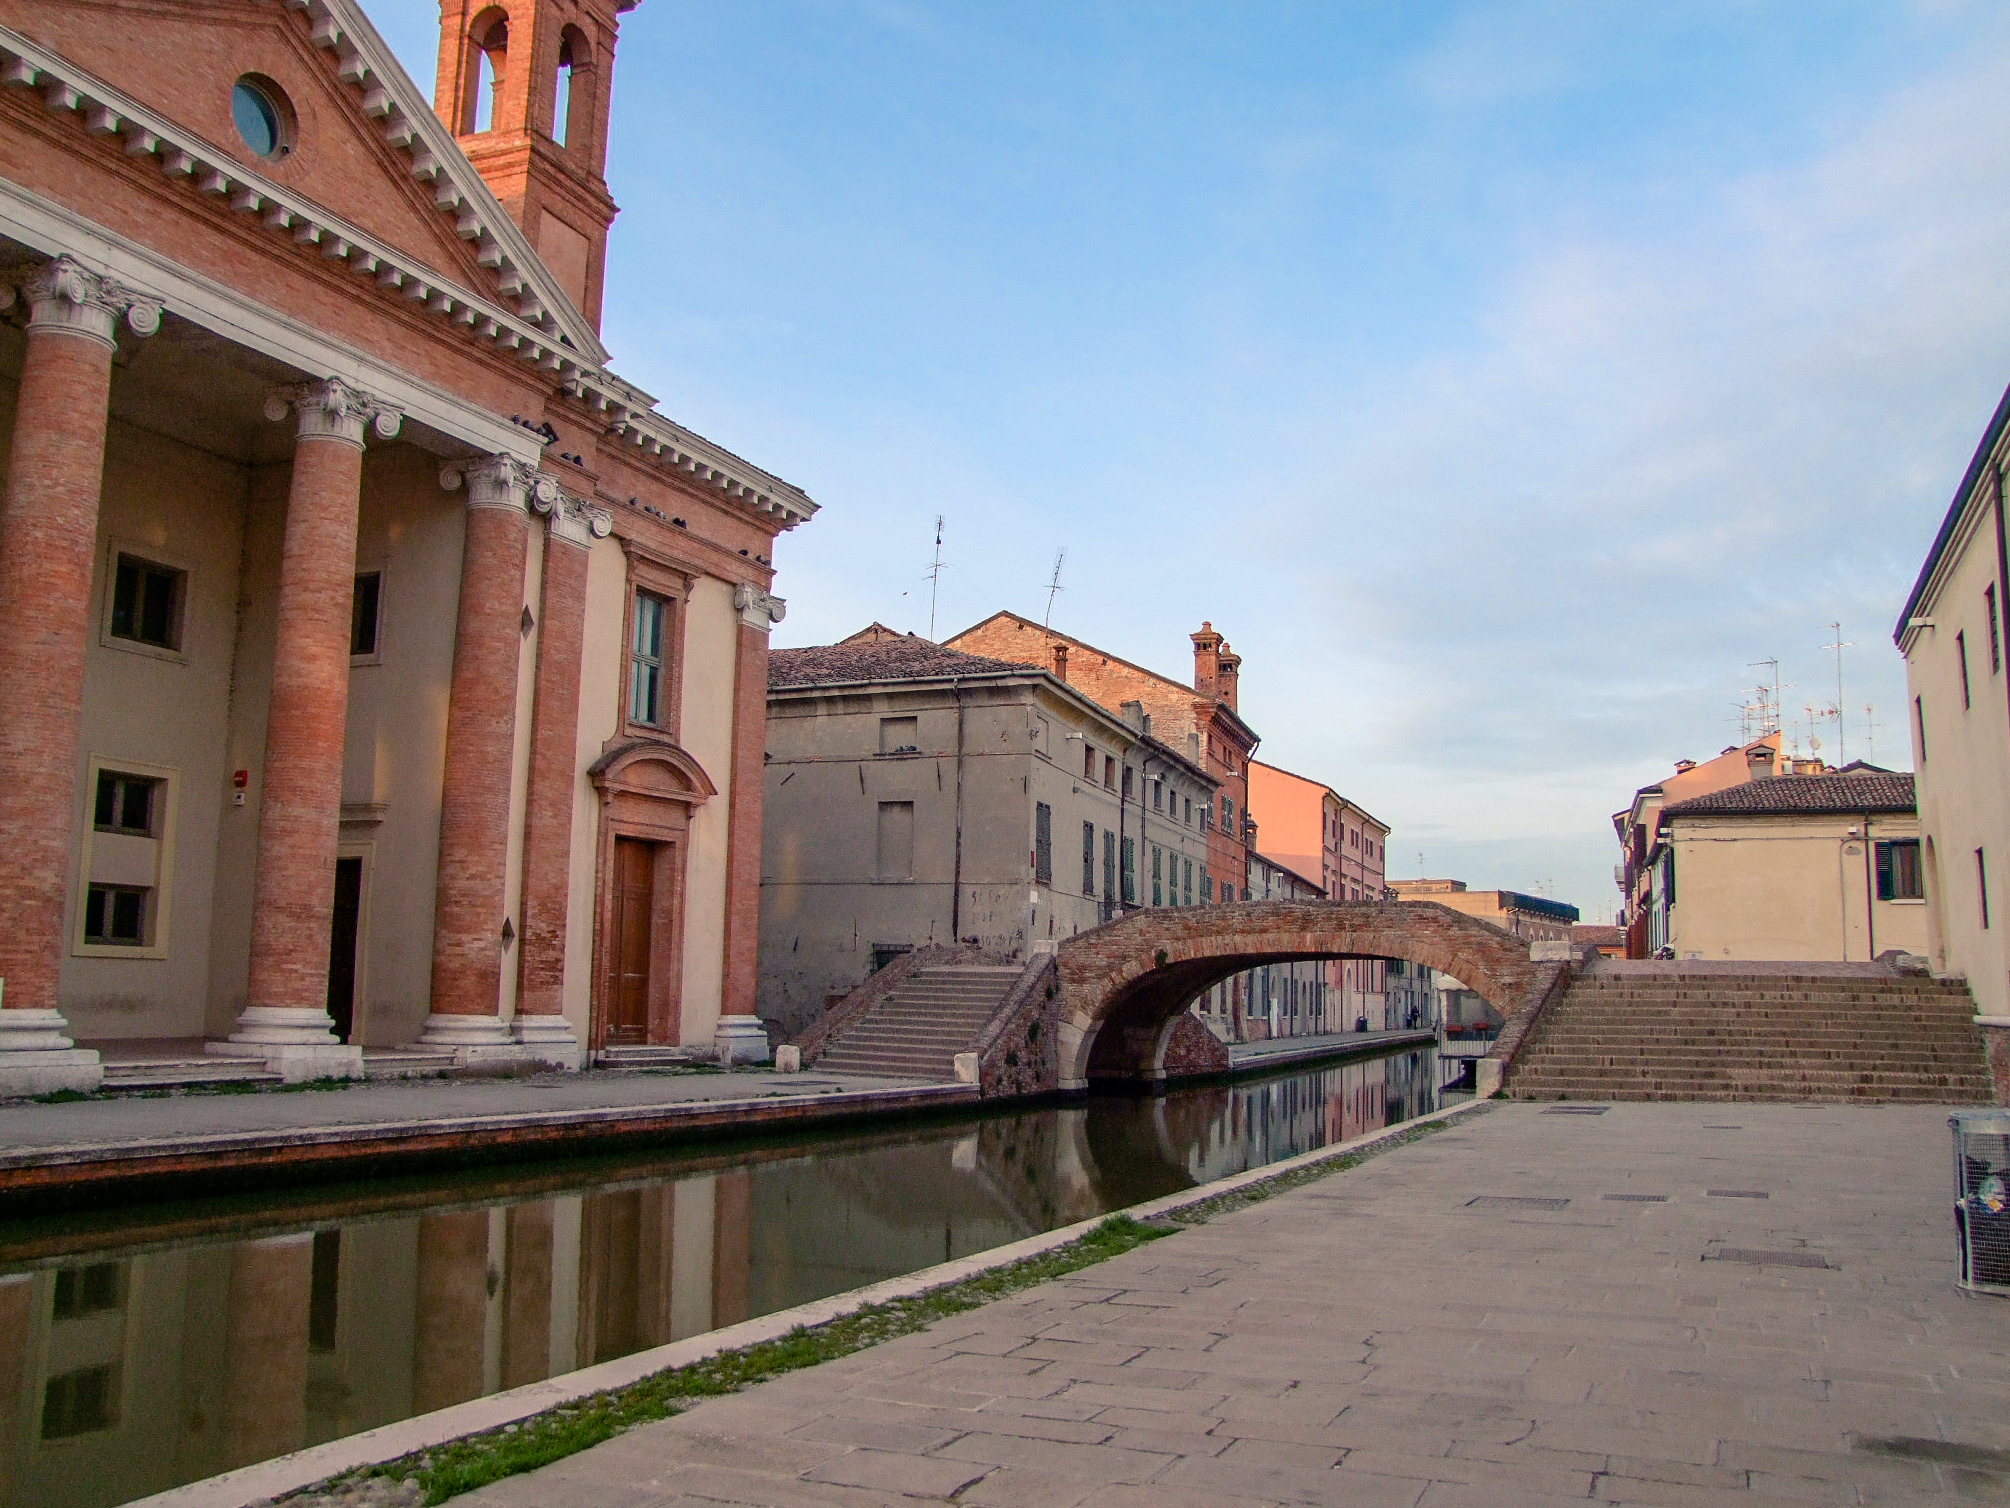 foto: https://upload.wikimedia.org/wikipedia/commons/1/18/Ponte_degli_Sbirri_di_Comacchio.jpg